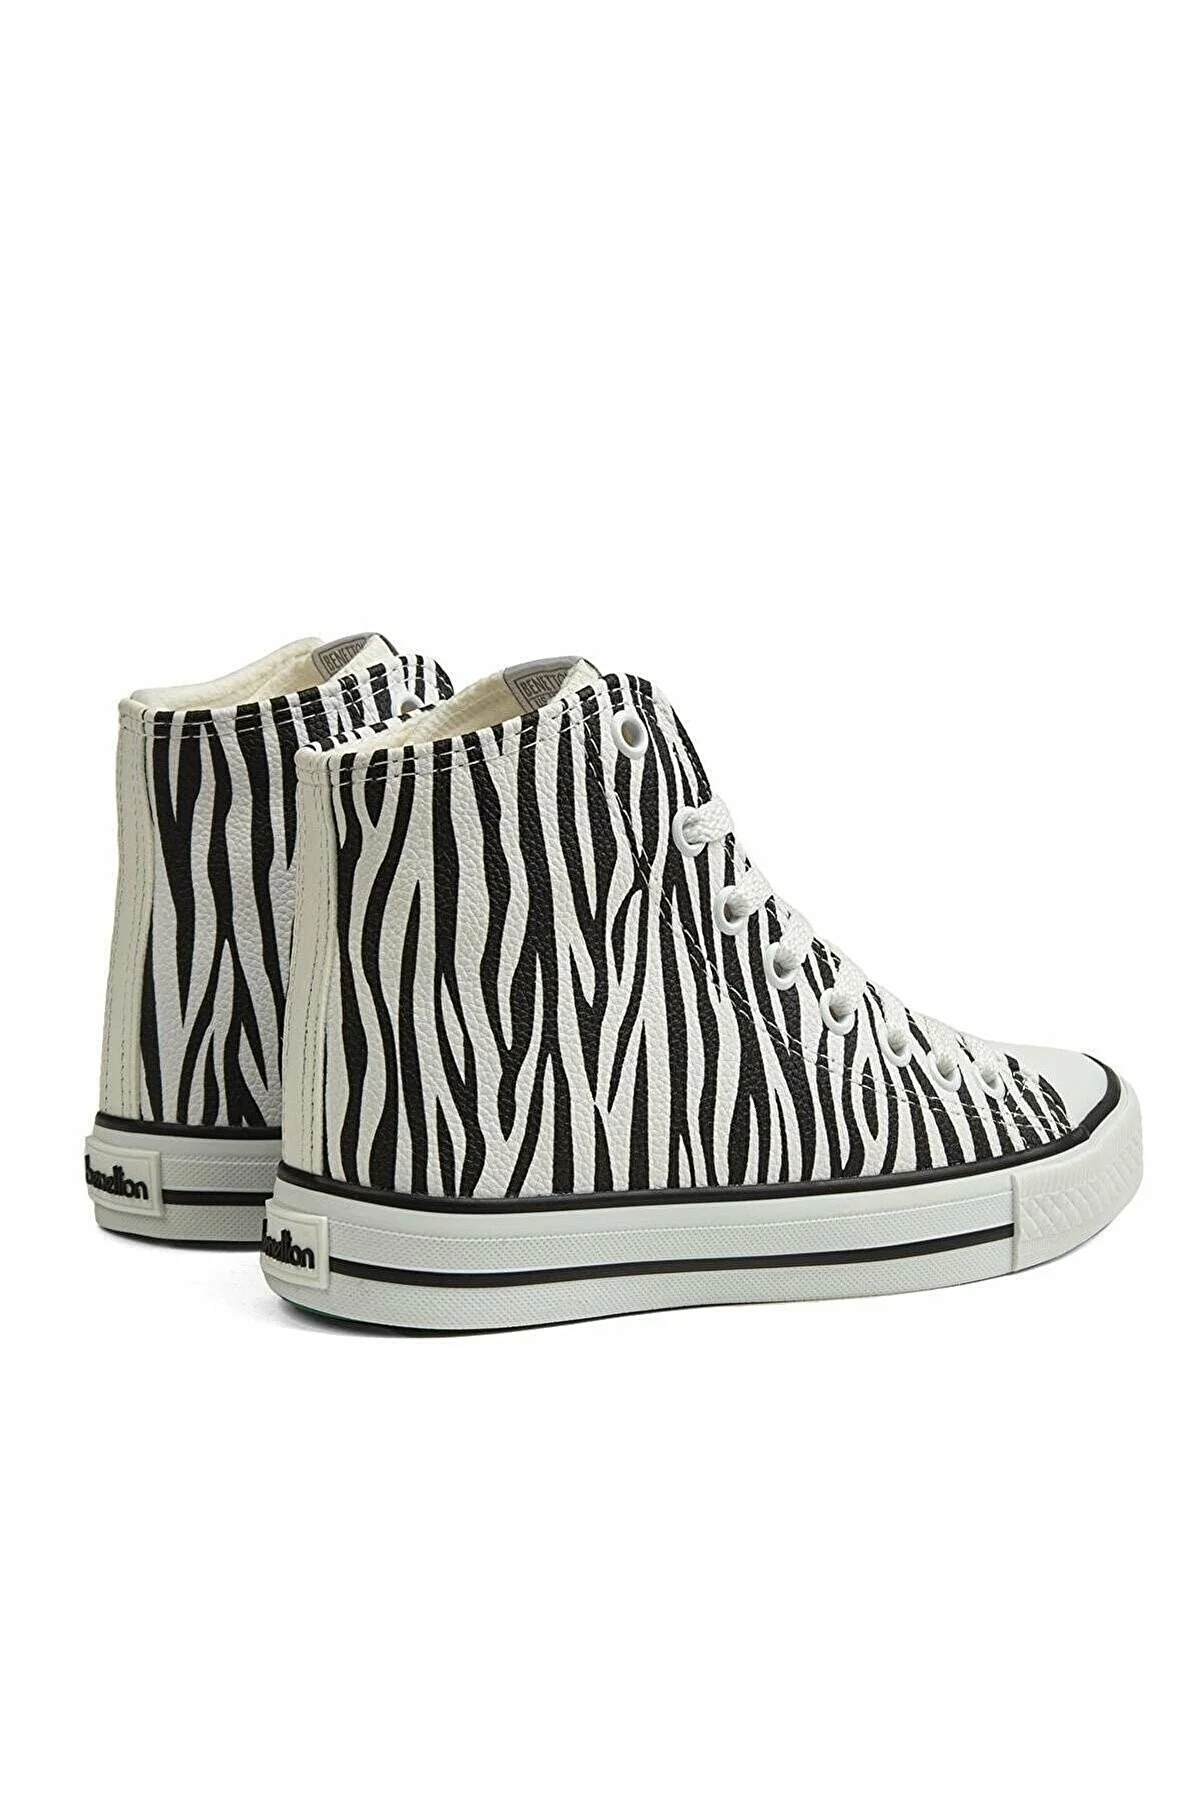 Kadın Spor Ayakkabı BN-30736-Zebra